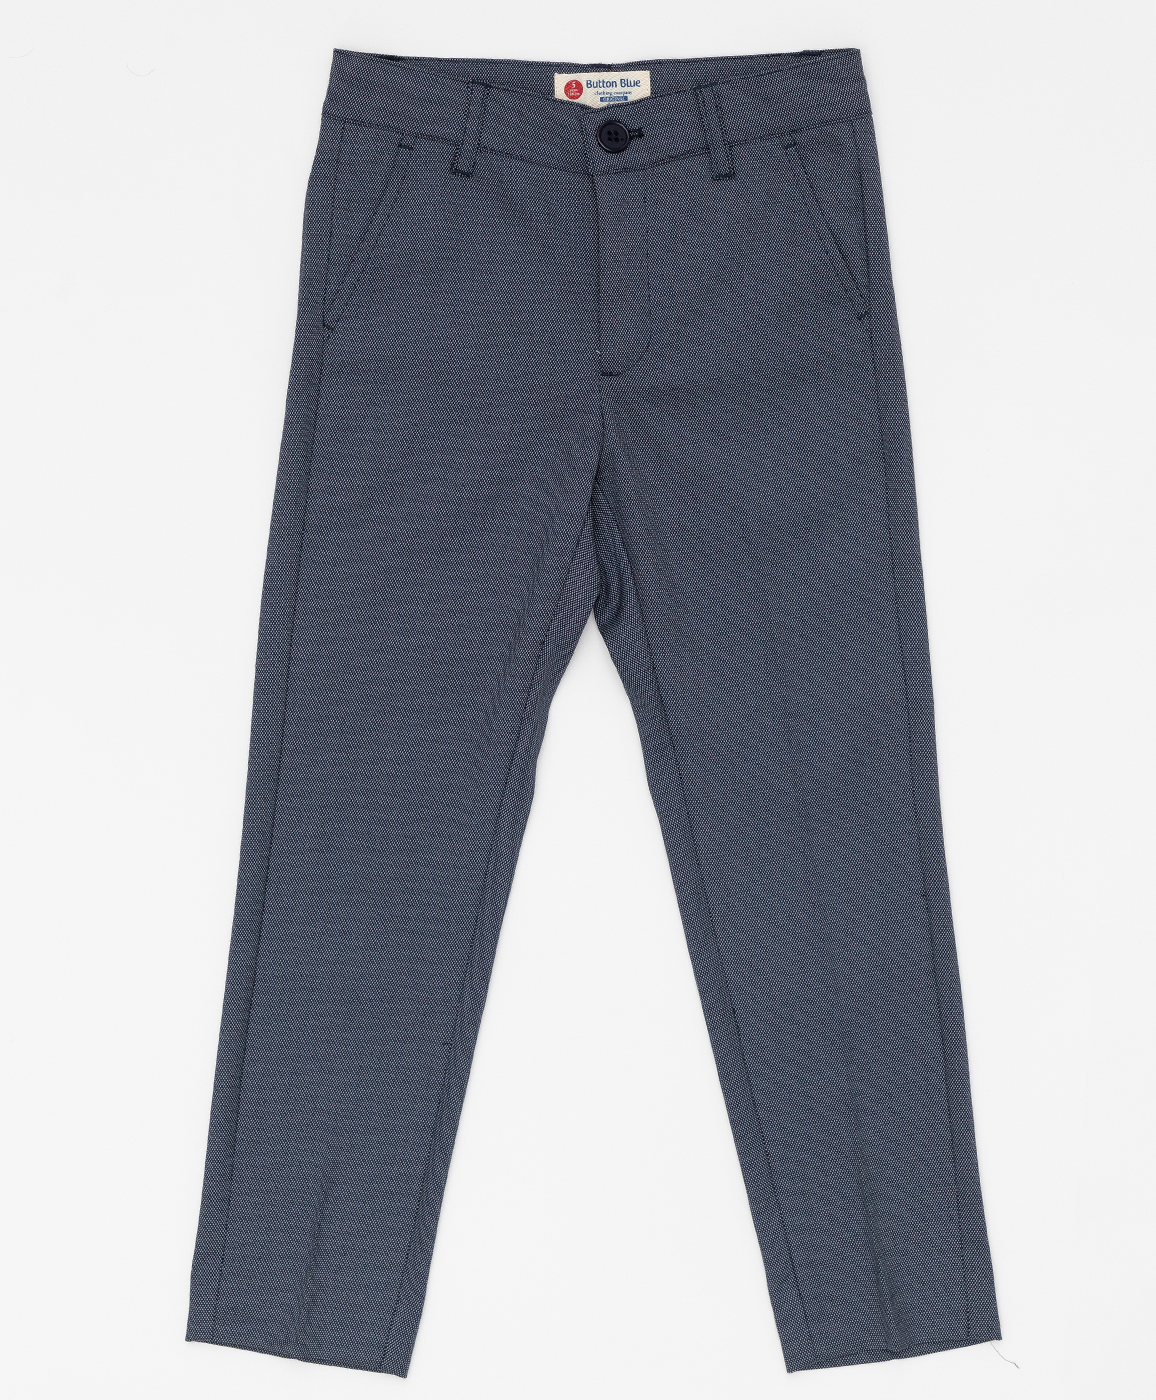 Серые брюки с узором "точка" Button Blue 220BBBMP63010800, размер 104, цвет серый regular fit / прямые - фото 1